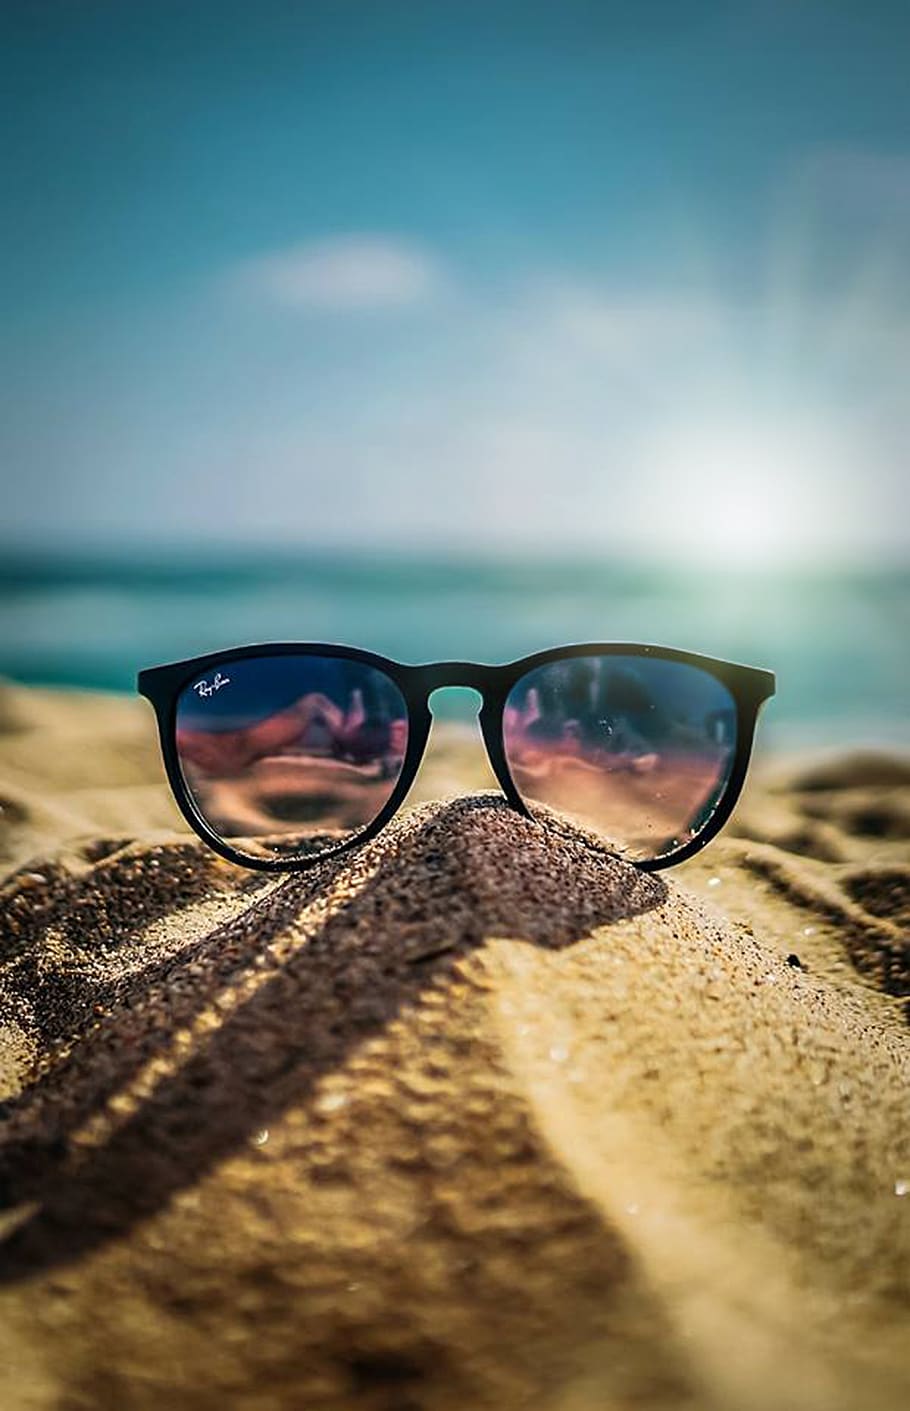 verano, playa, arena, sol, vacaciones, mar, cielo, azul, gafas, gafas de sol